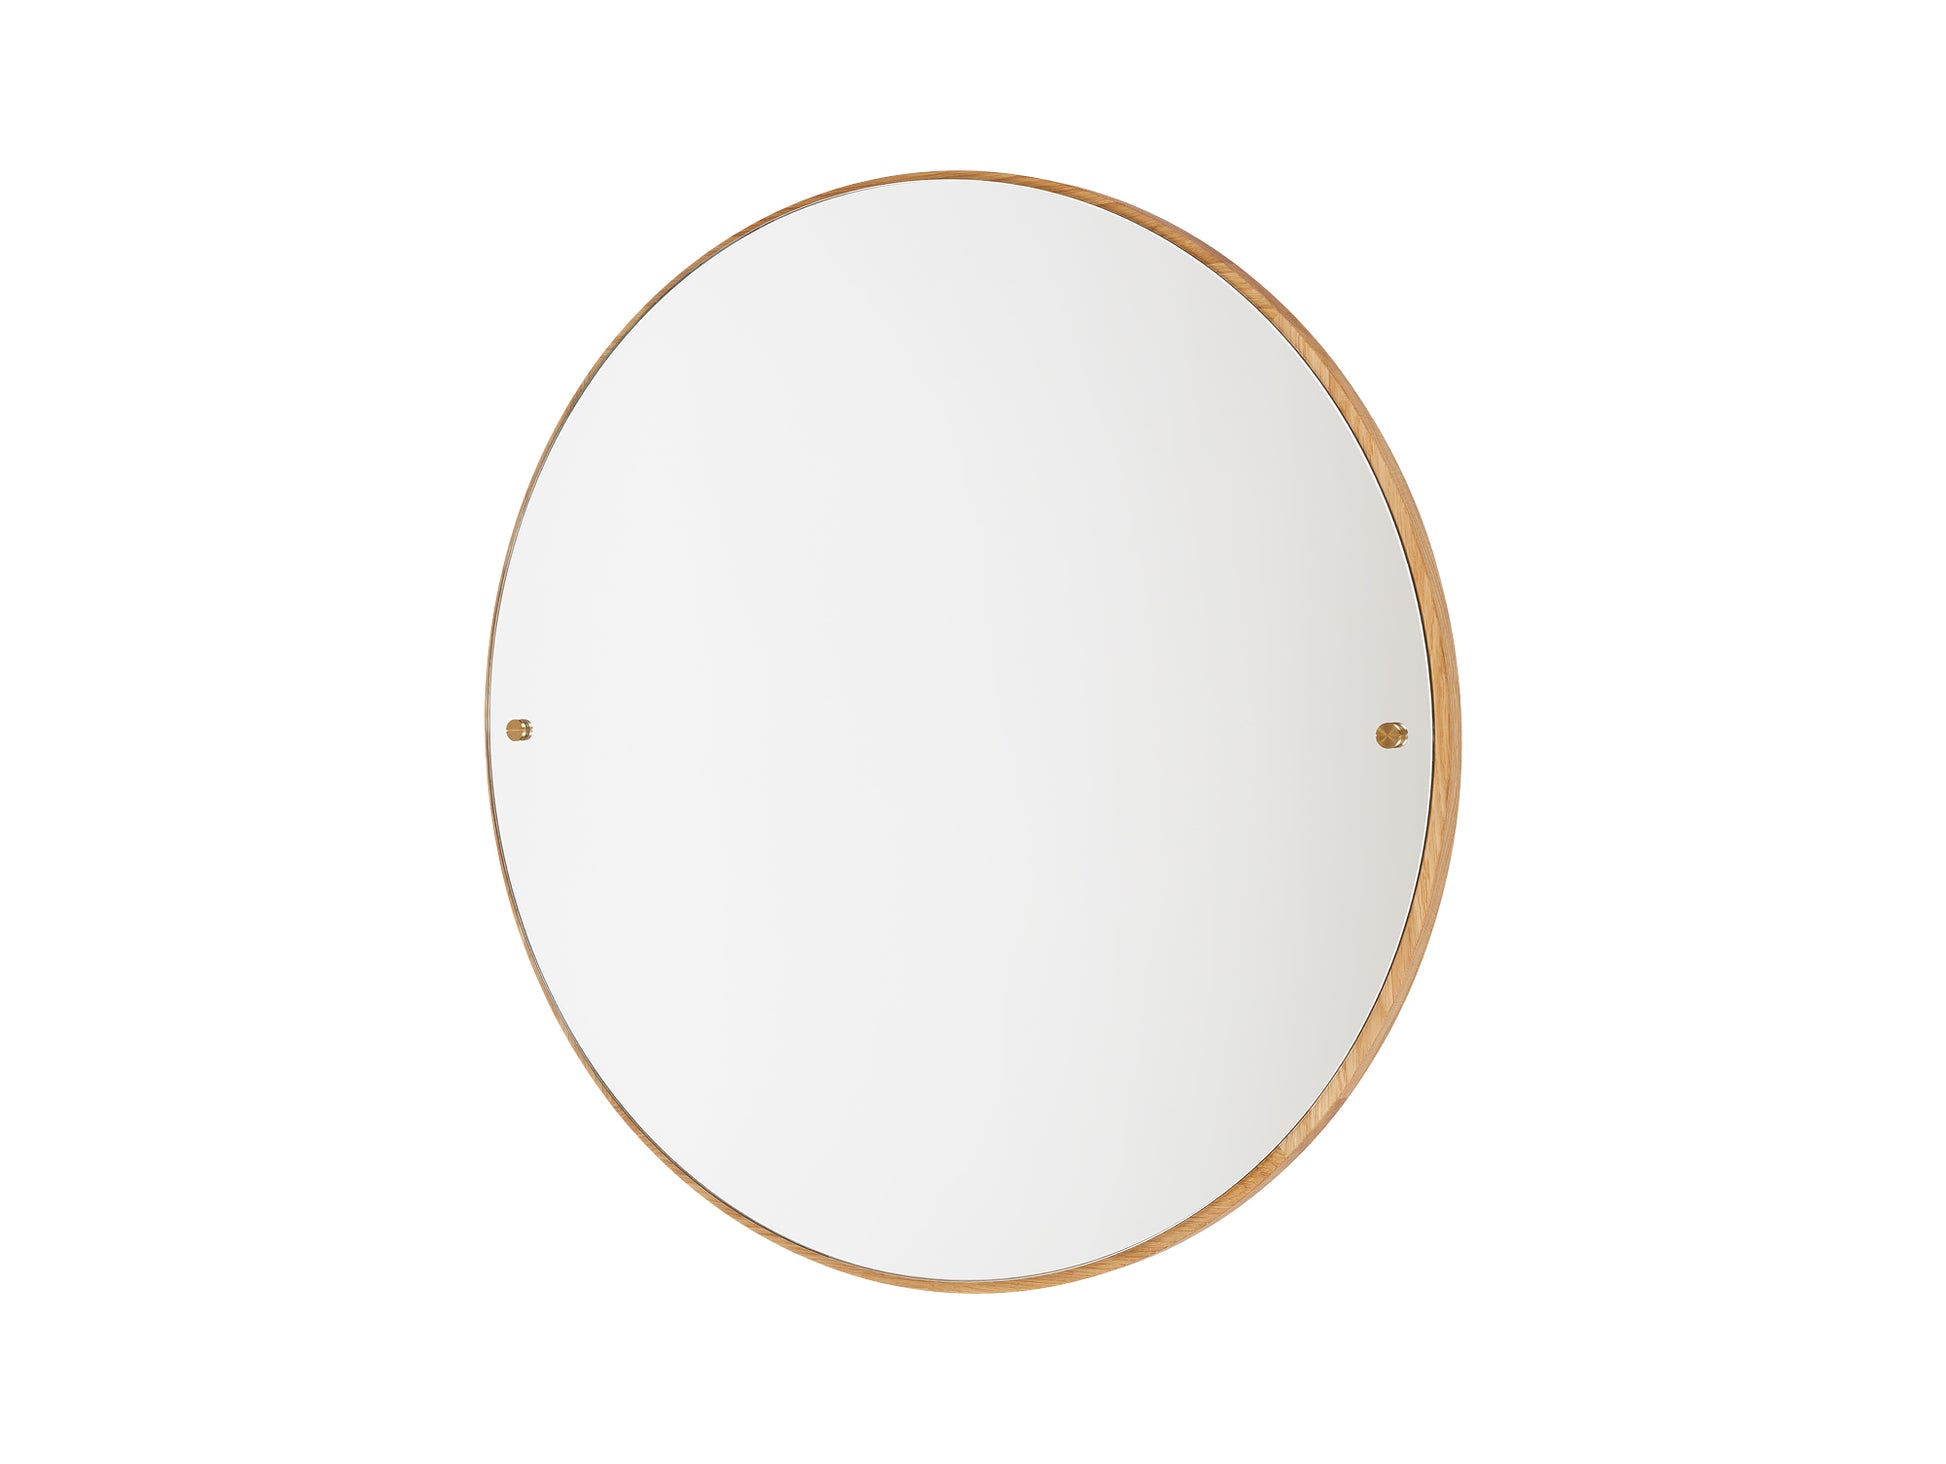 CM-1 Circle Mirror by Frama - Large (75 cm Diameter)